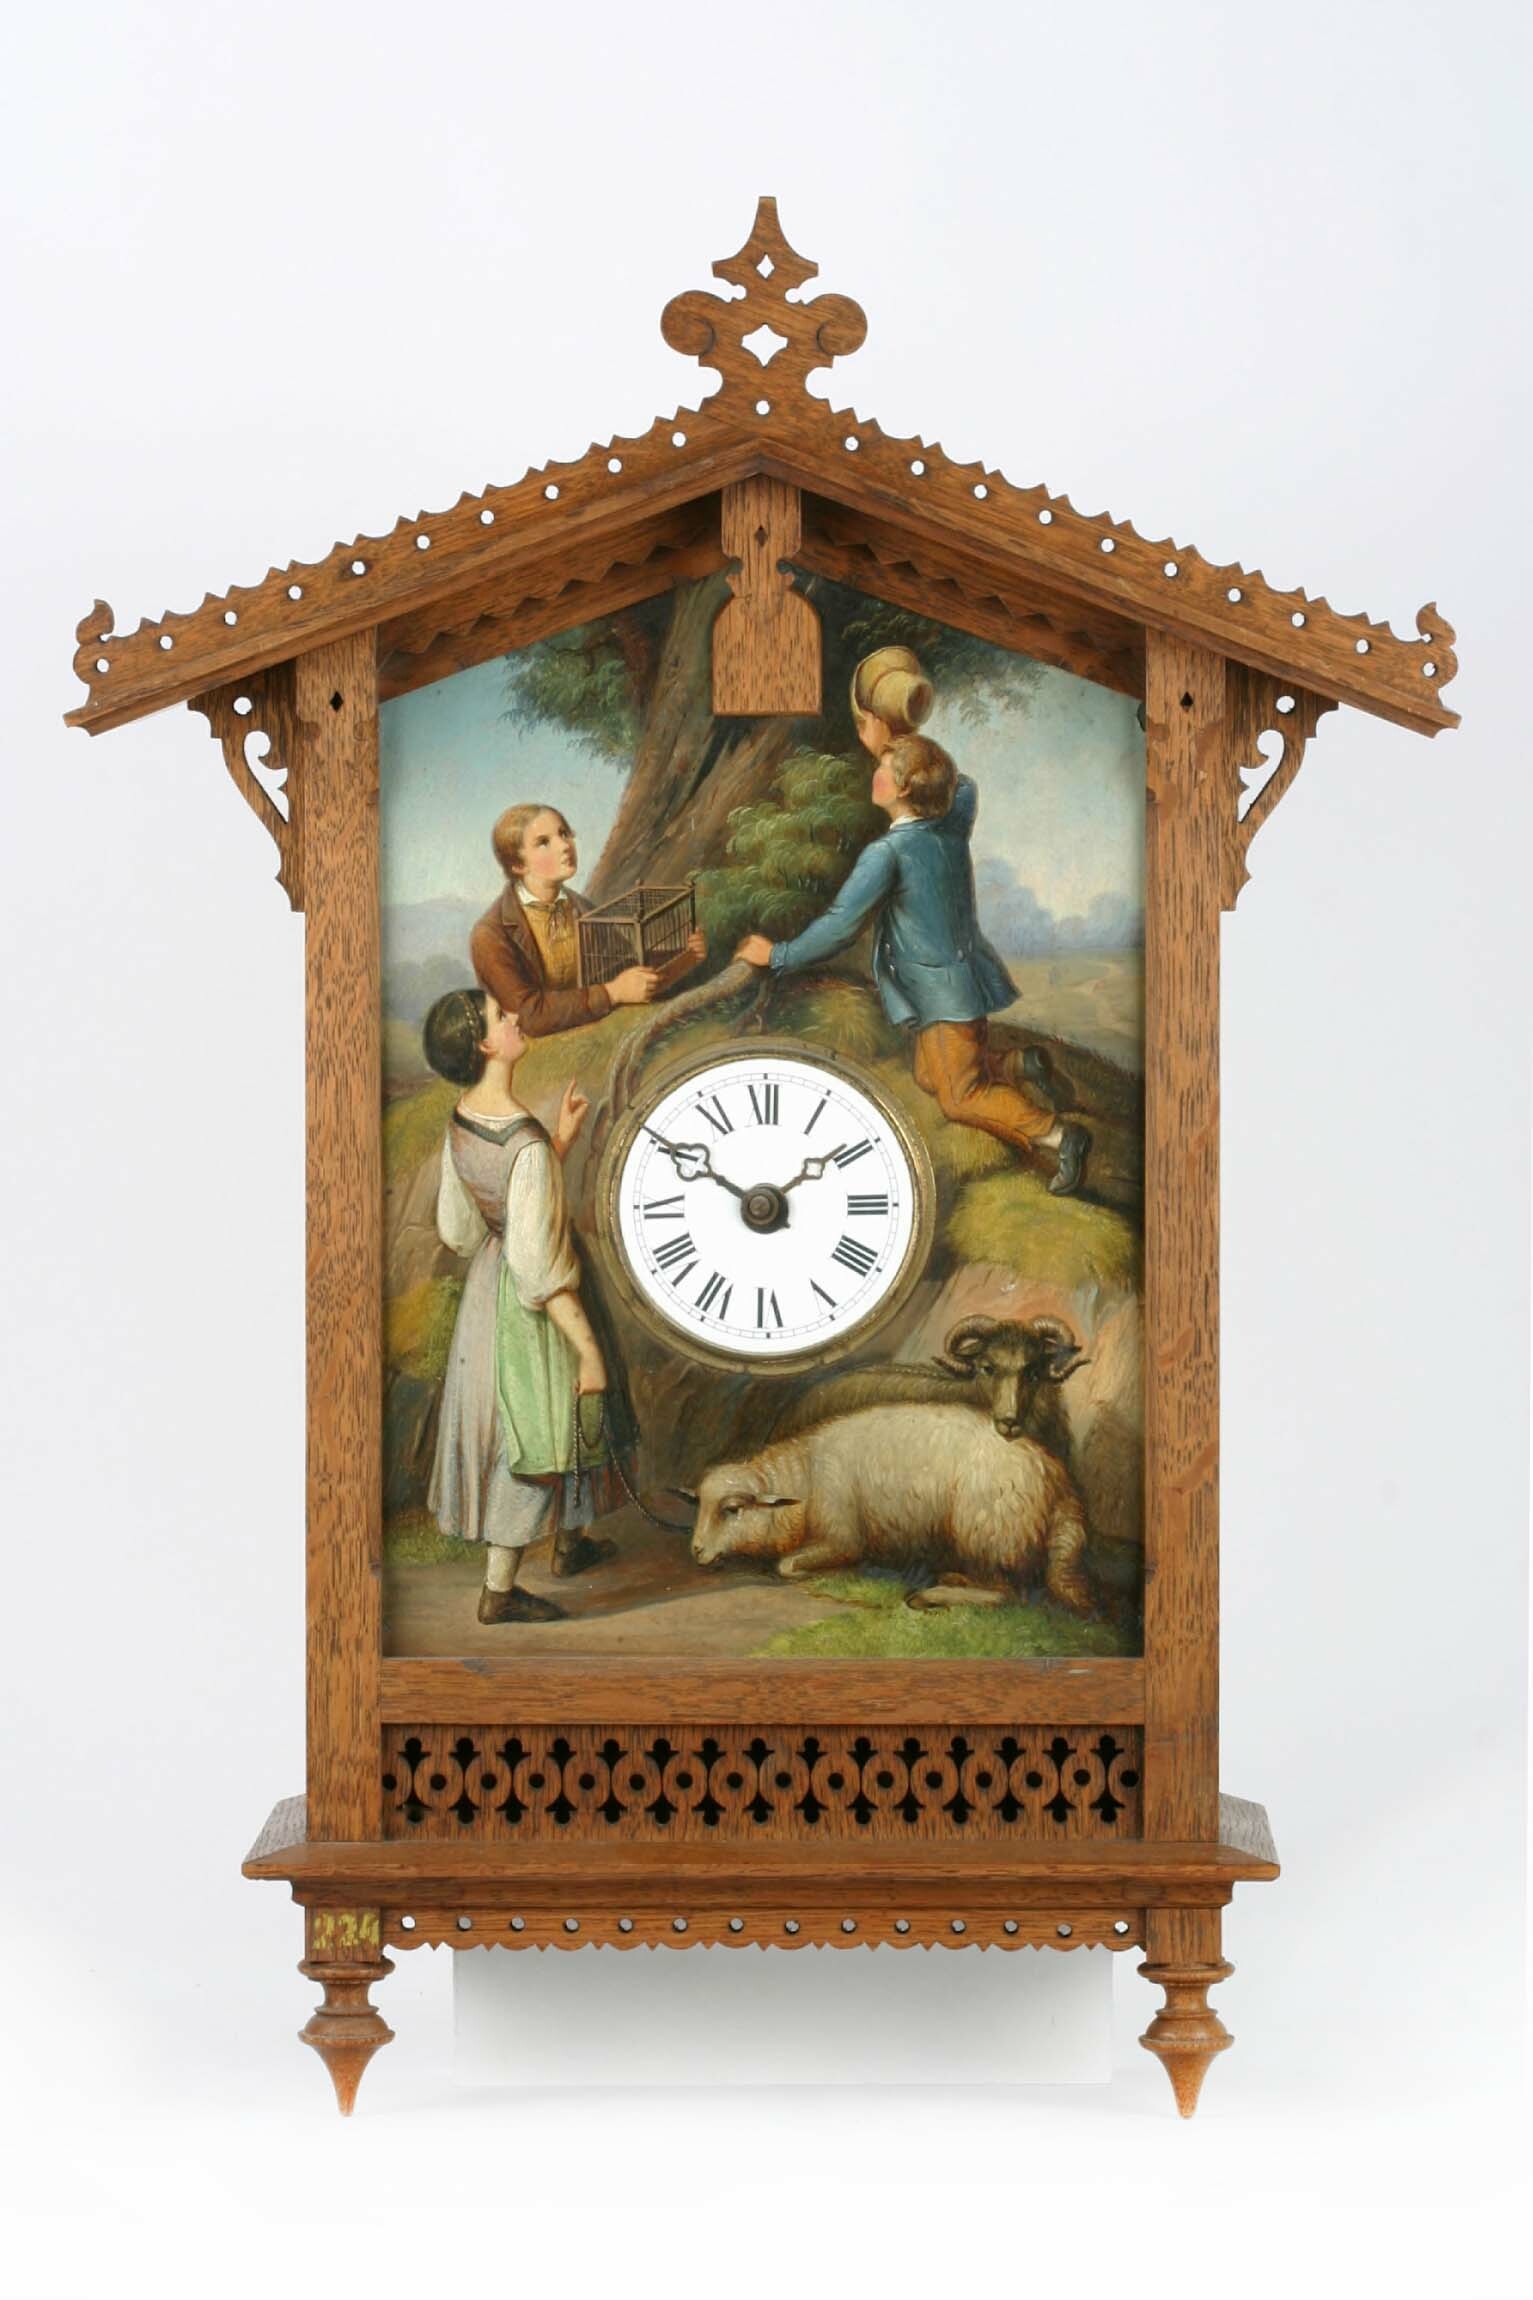 Bahnhäusleuhr, Johann N. Heinemann, Hüfingen, Johann Baptist Laule, August Tritschler, Furtwangen, 1861 (Deutsches Uhrenmuseum CC BY-SA)